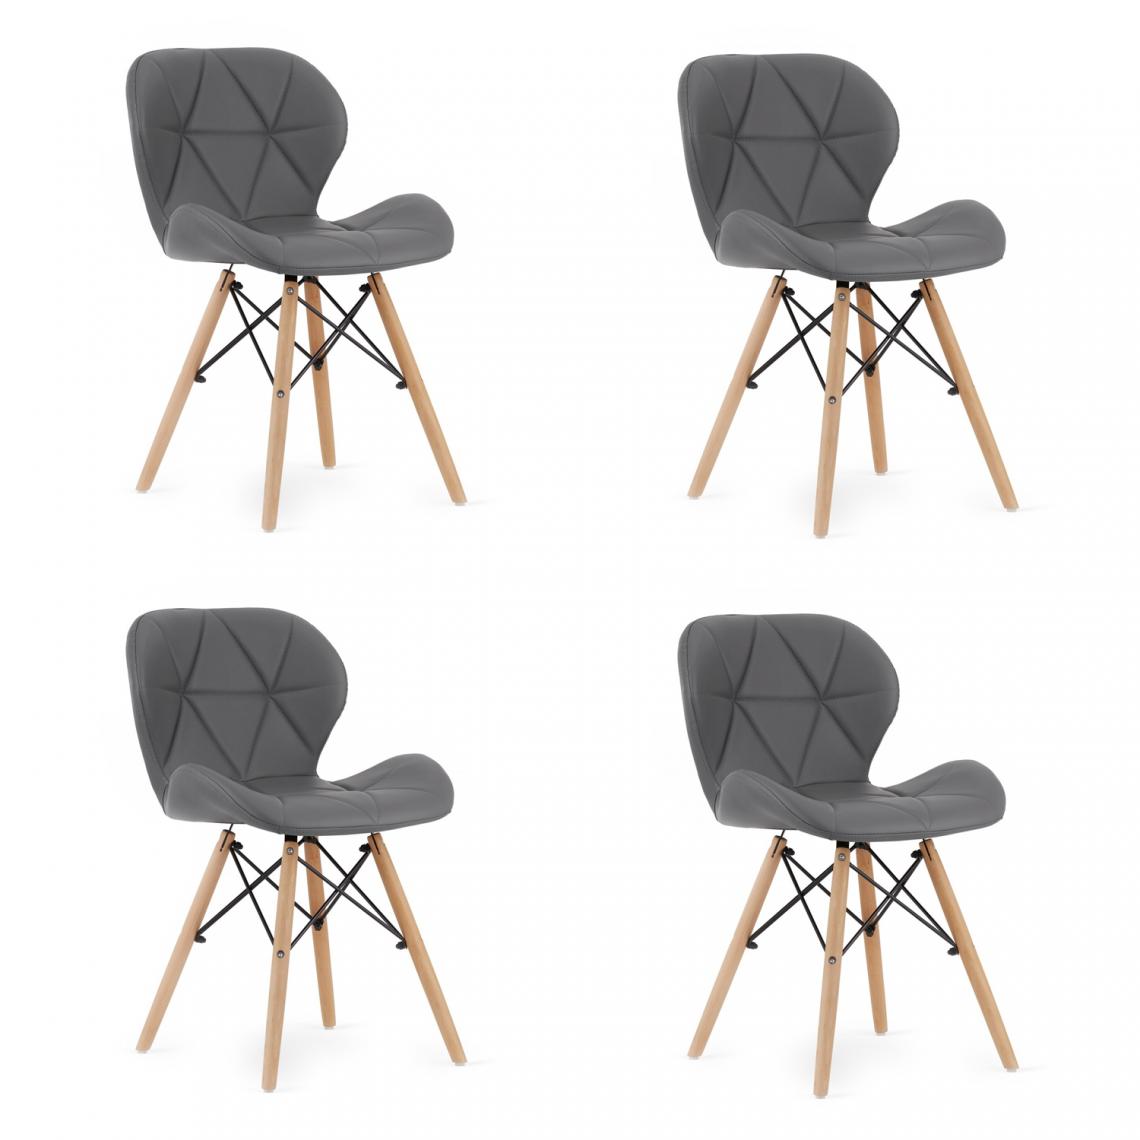 Hucoco - LAGOSK - Lot de 4 chaises similicuir style glamour salon/salle à manger - 73x47x38 cm - Chaise de salle à manger - Gris - Chaises